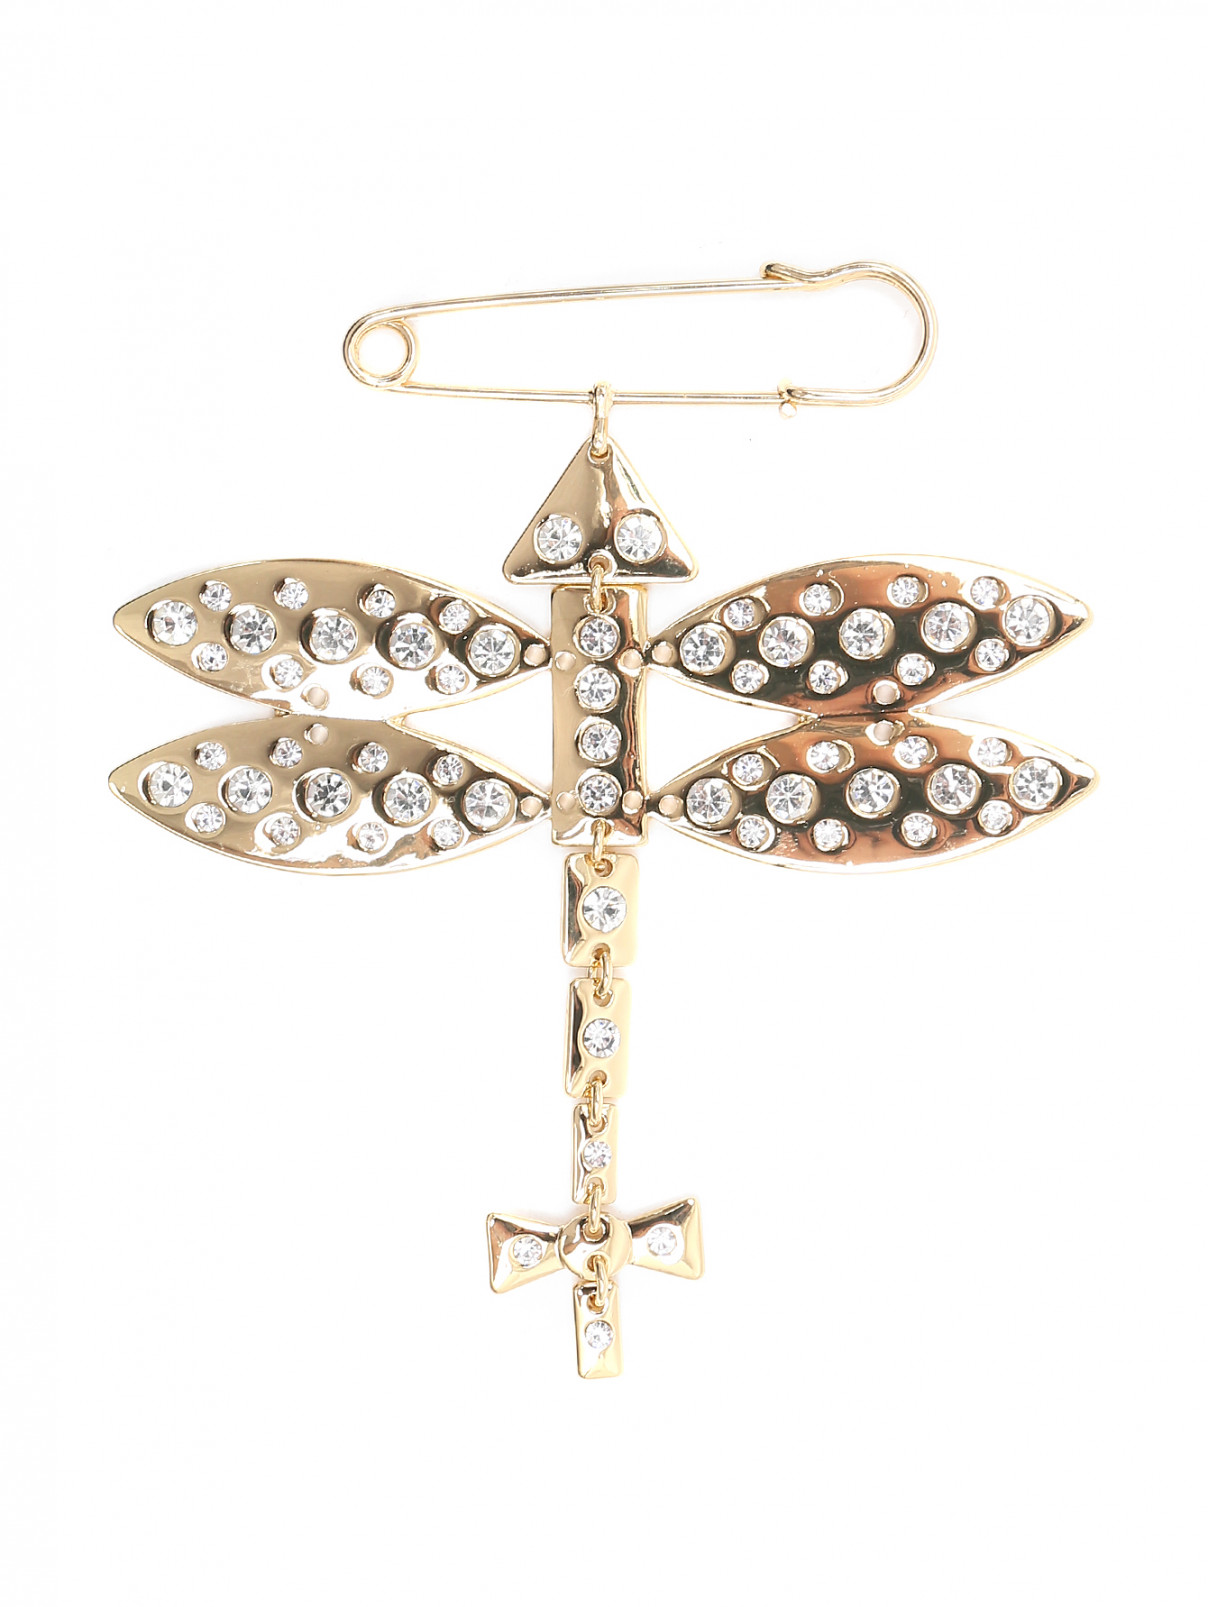 Брошь из металла, декорированная кристаллами Marina Rinaldi  –  Общий вид  – Цвет:  Золотой